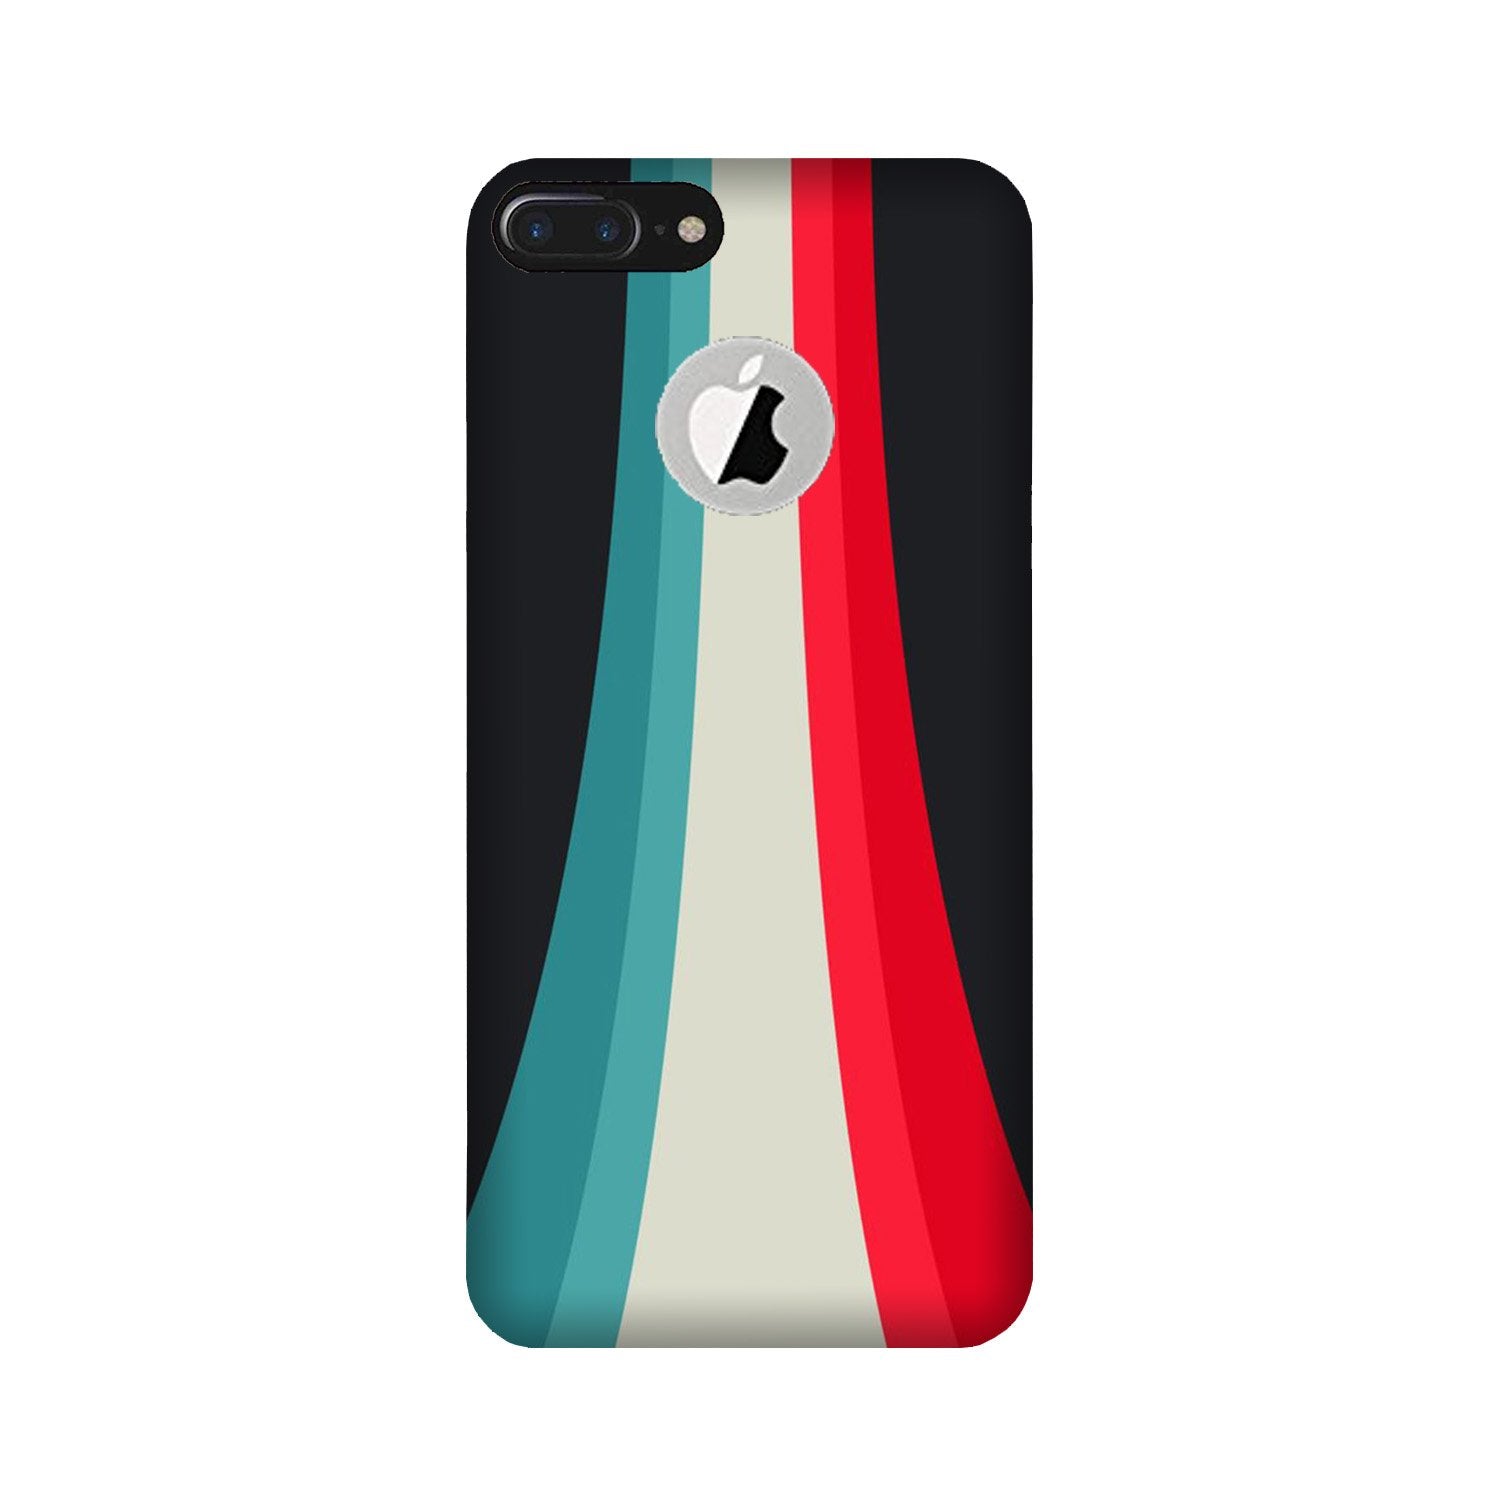 Slider Case for iPhone 7 Plus logo cut (Design - 189)